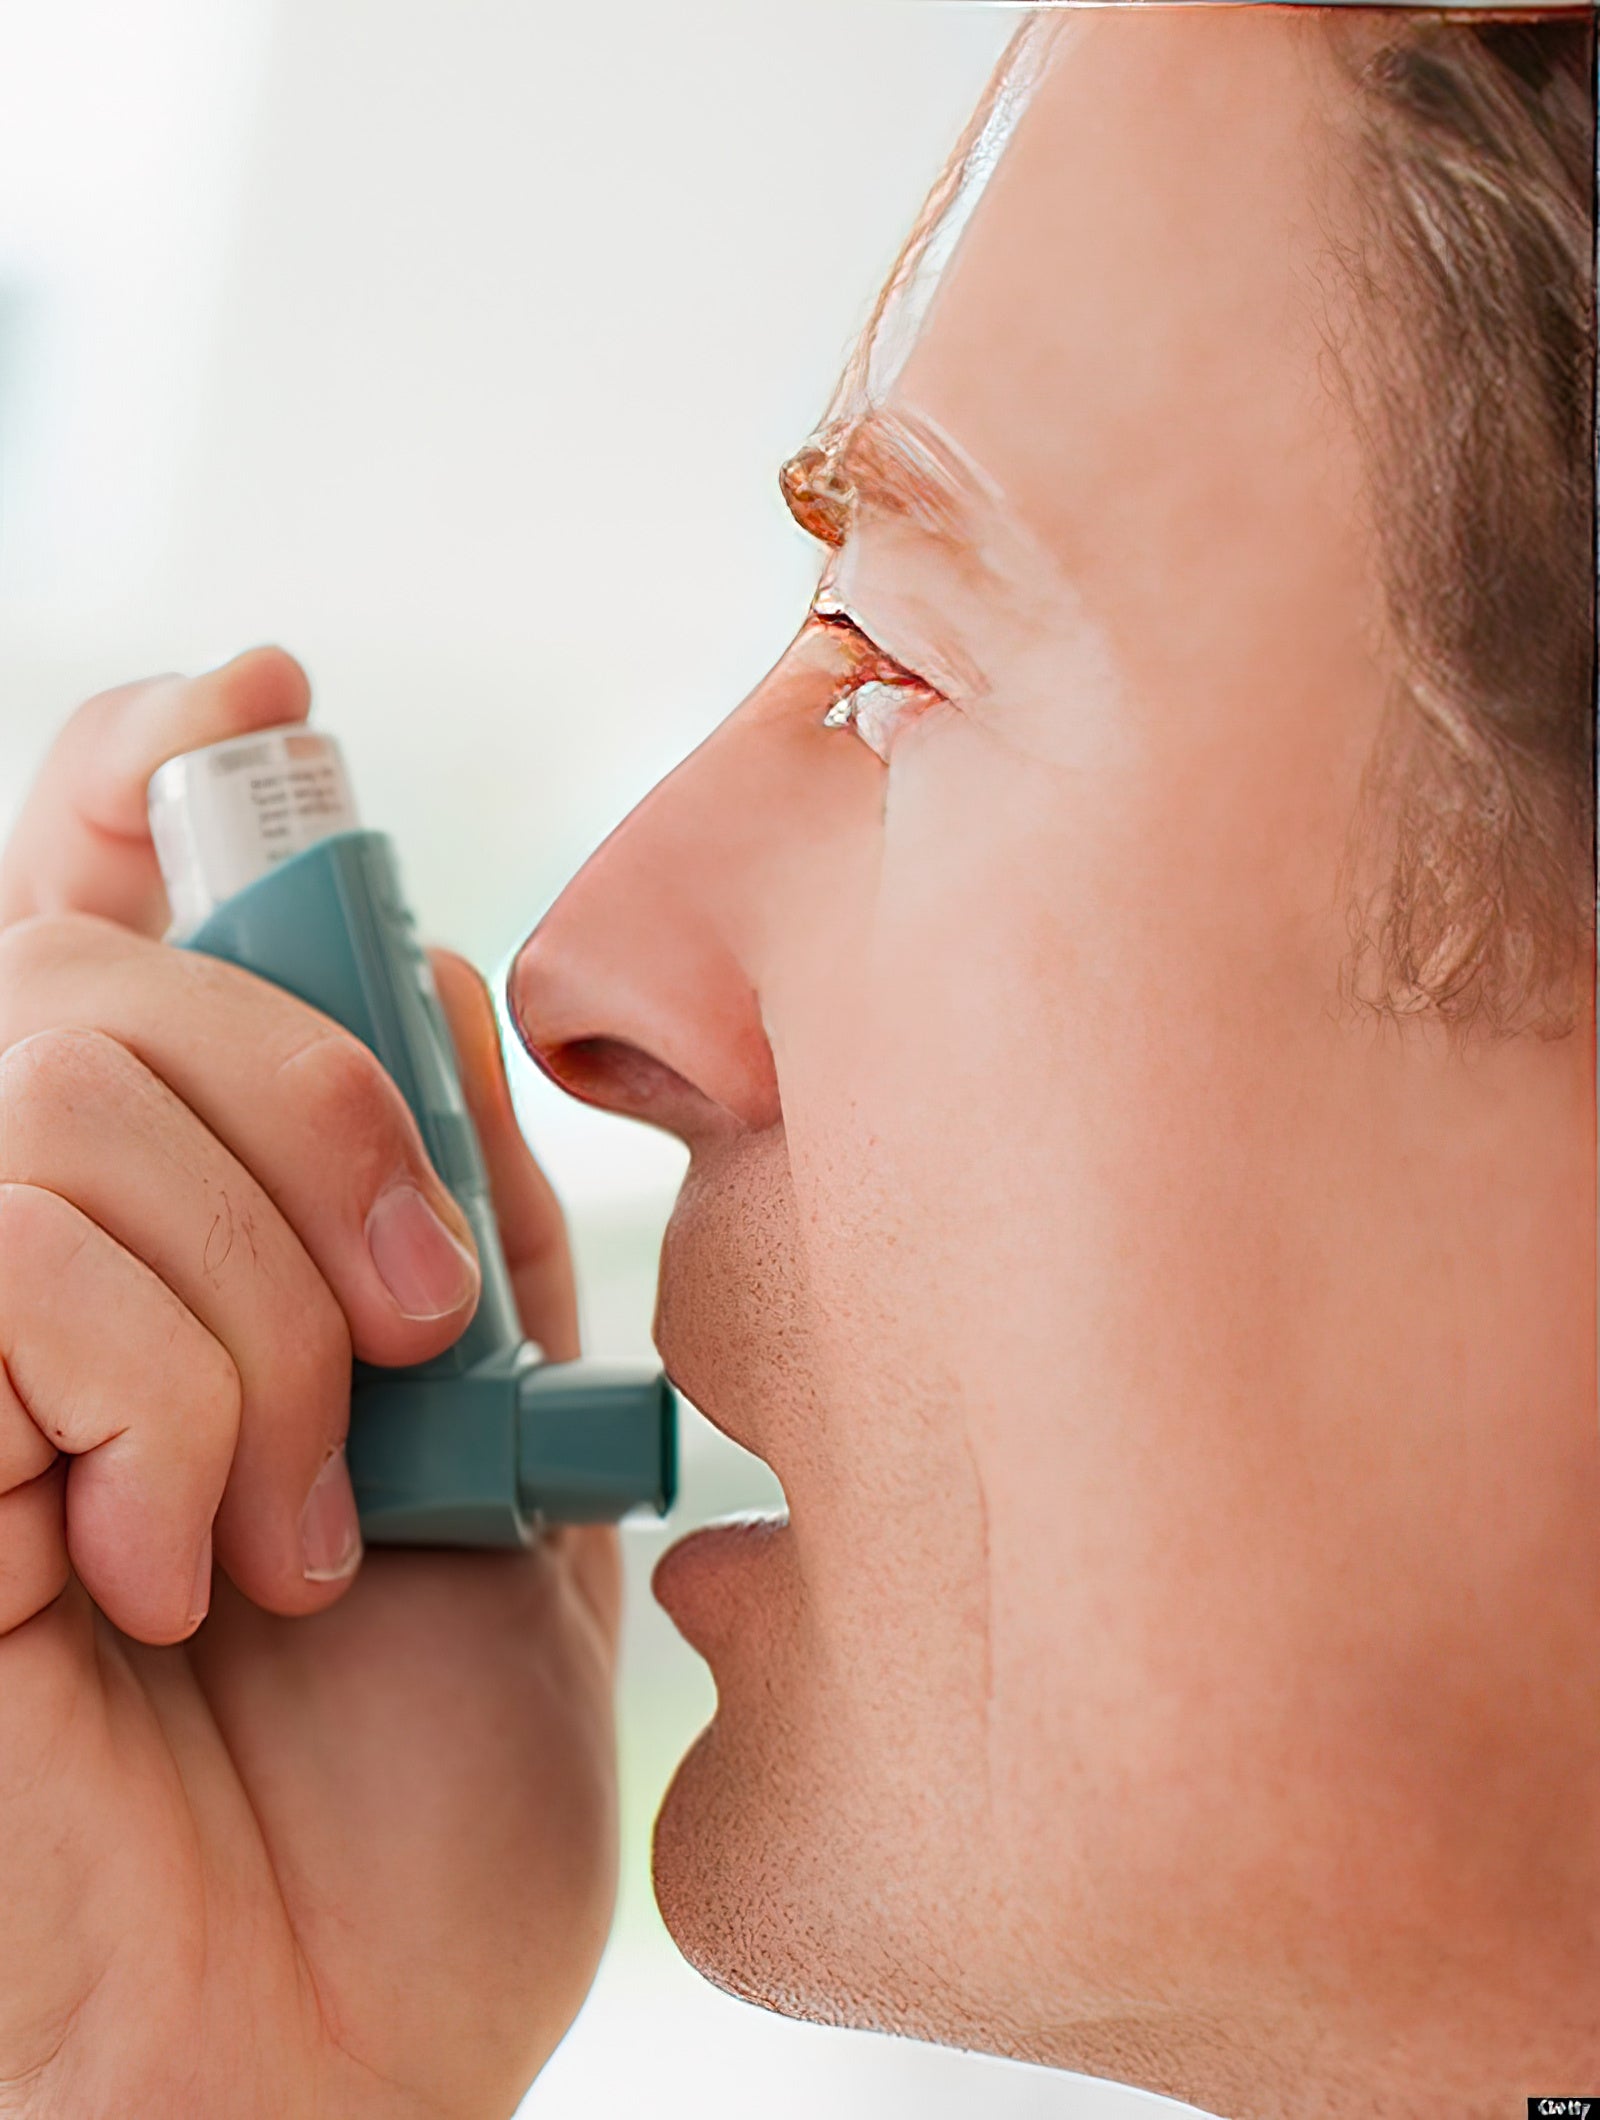 Kreatin verschlimmert Asthmasymptome